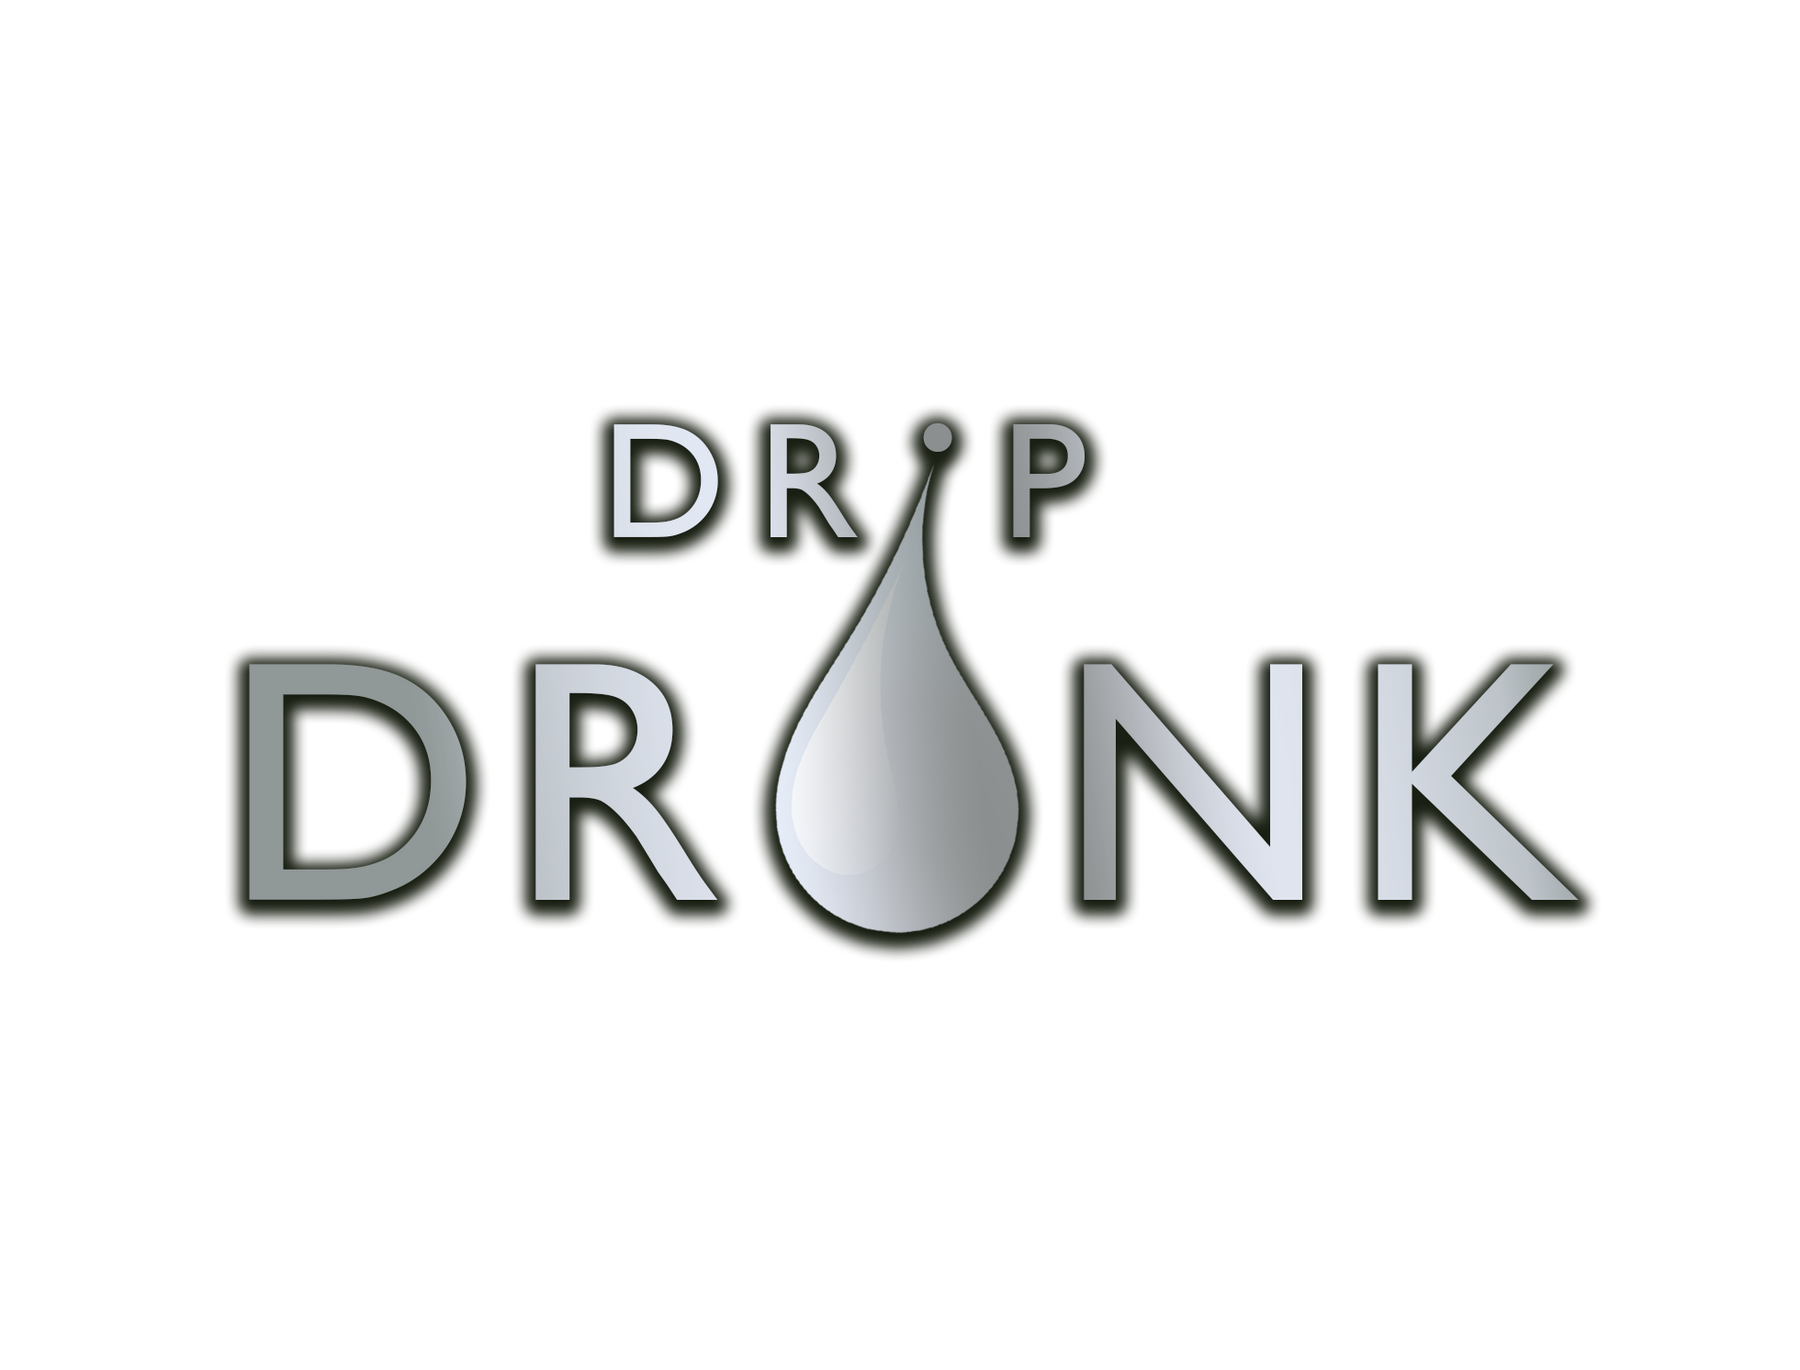 Drip drunk